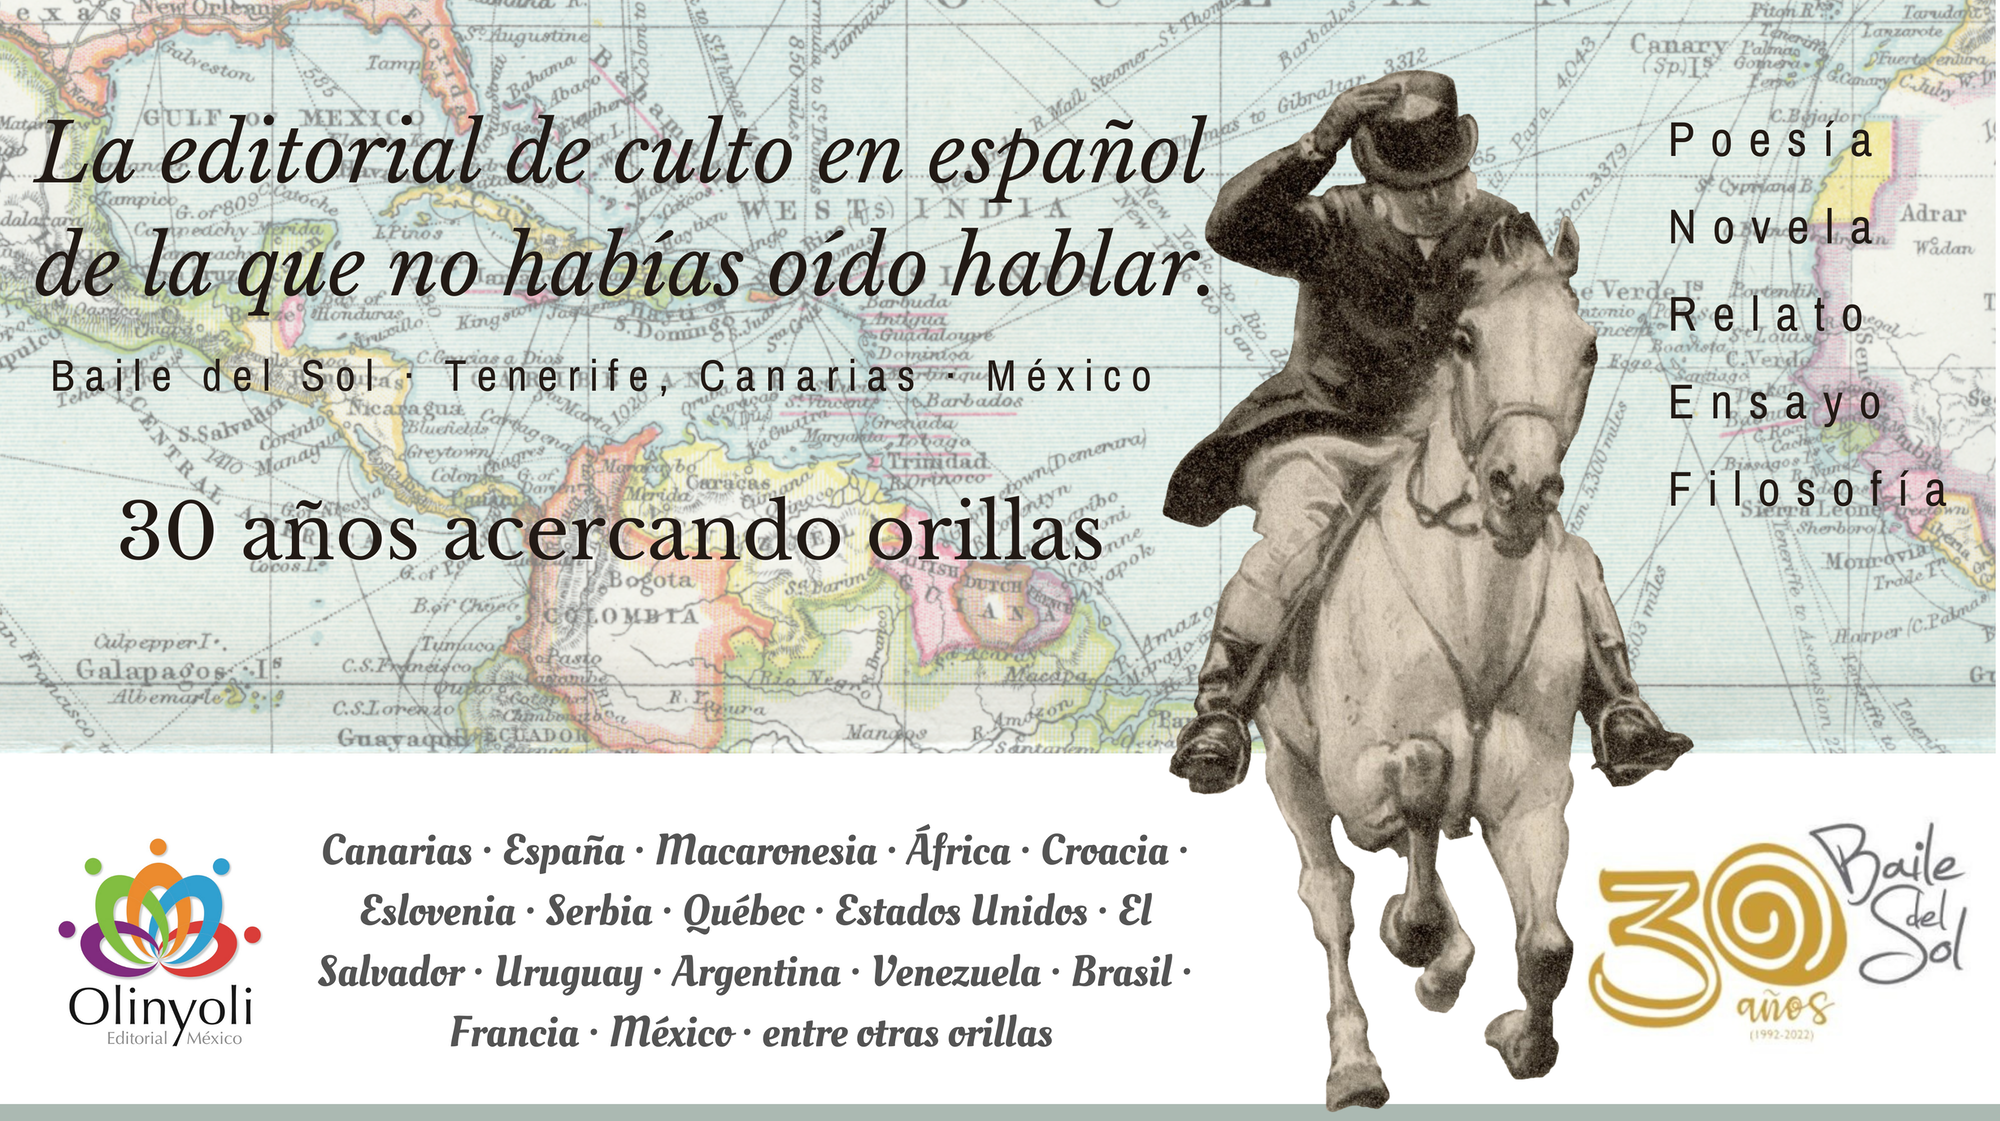 Copia de La editorial de culto en español (Portada para Facebook) (4920 × 2760 px)